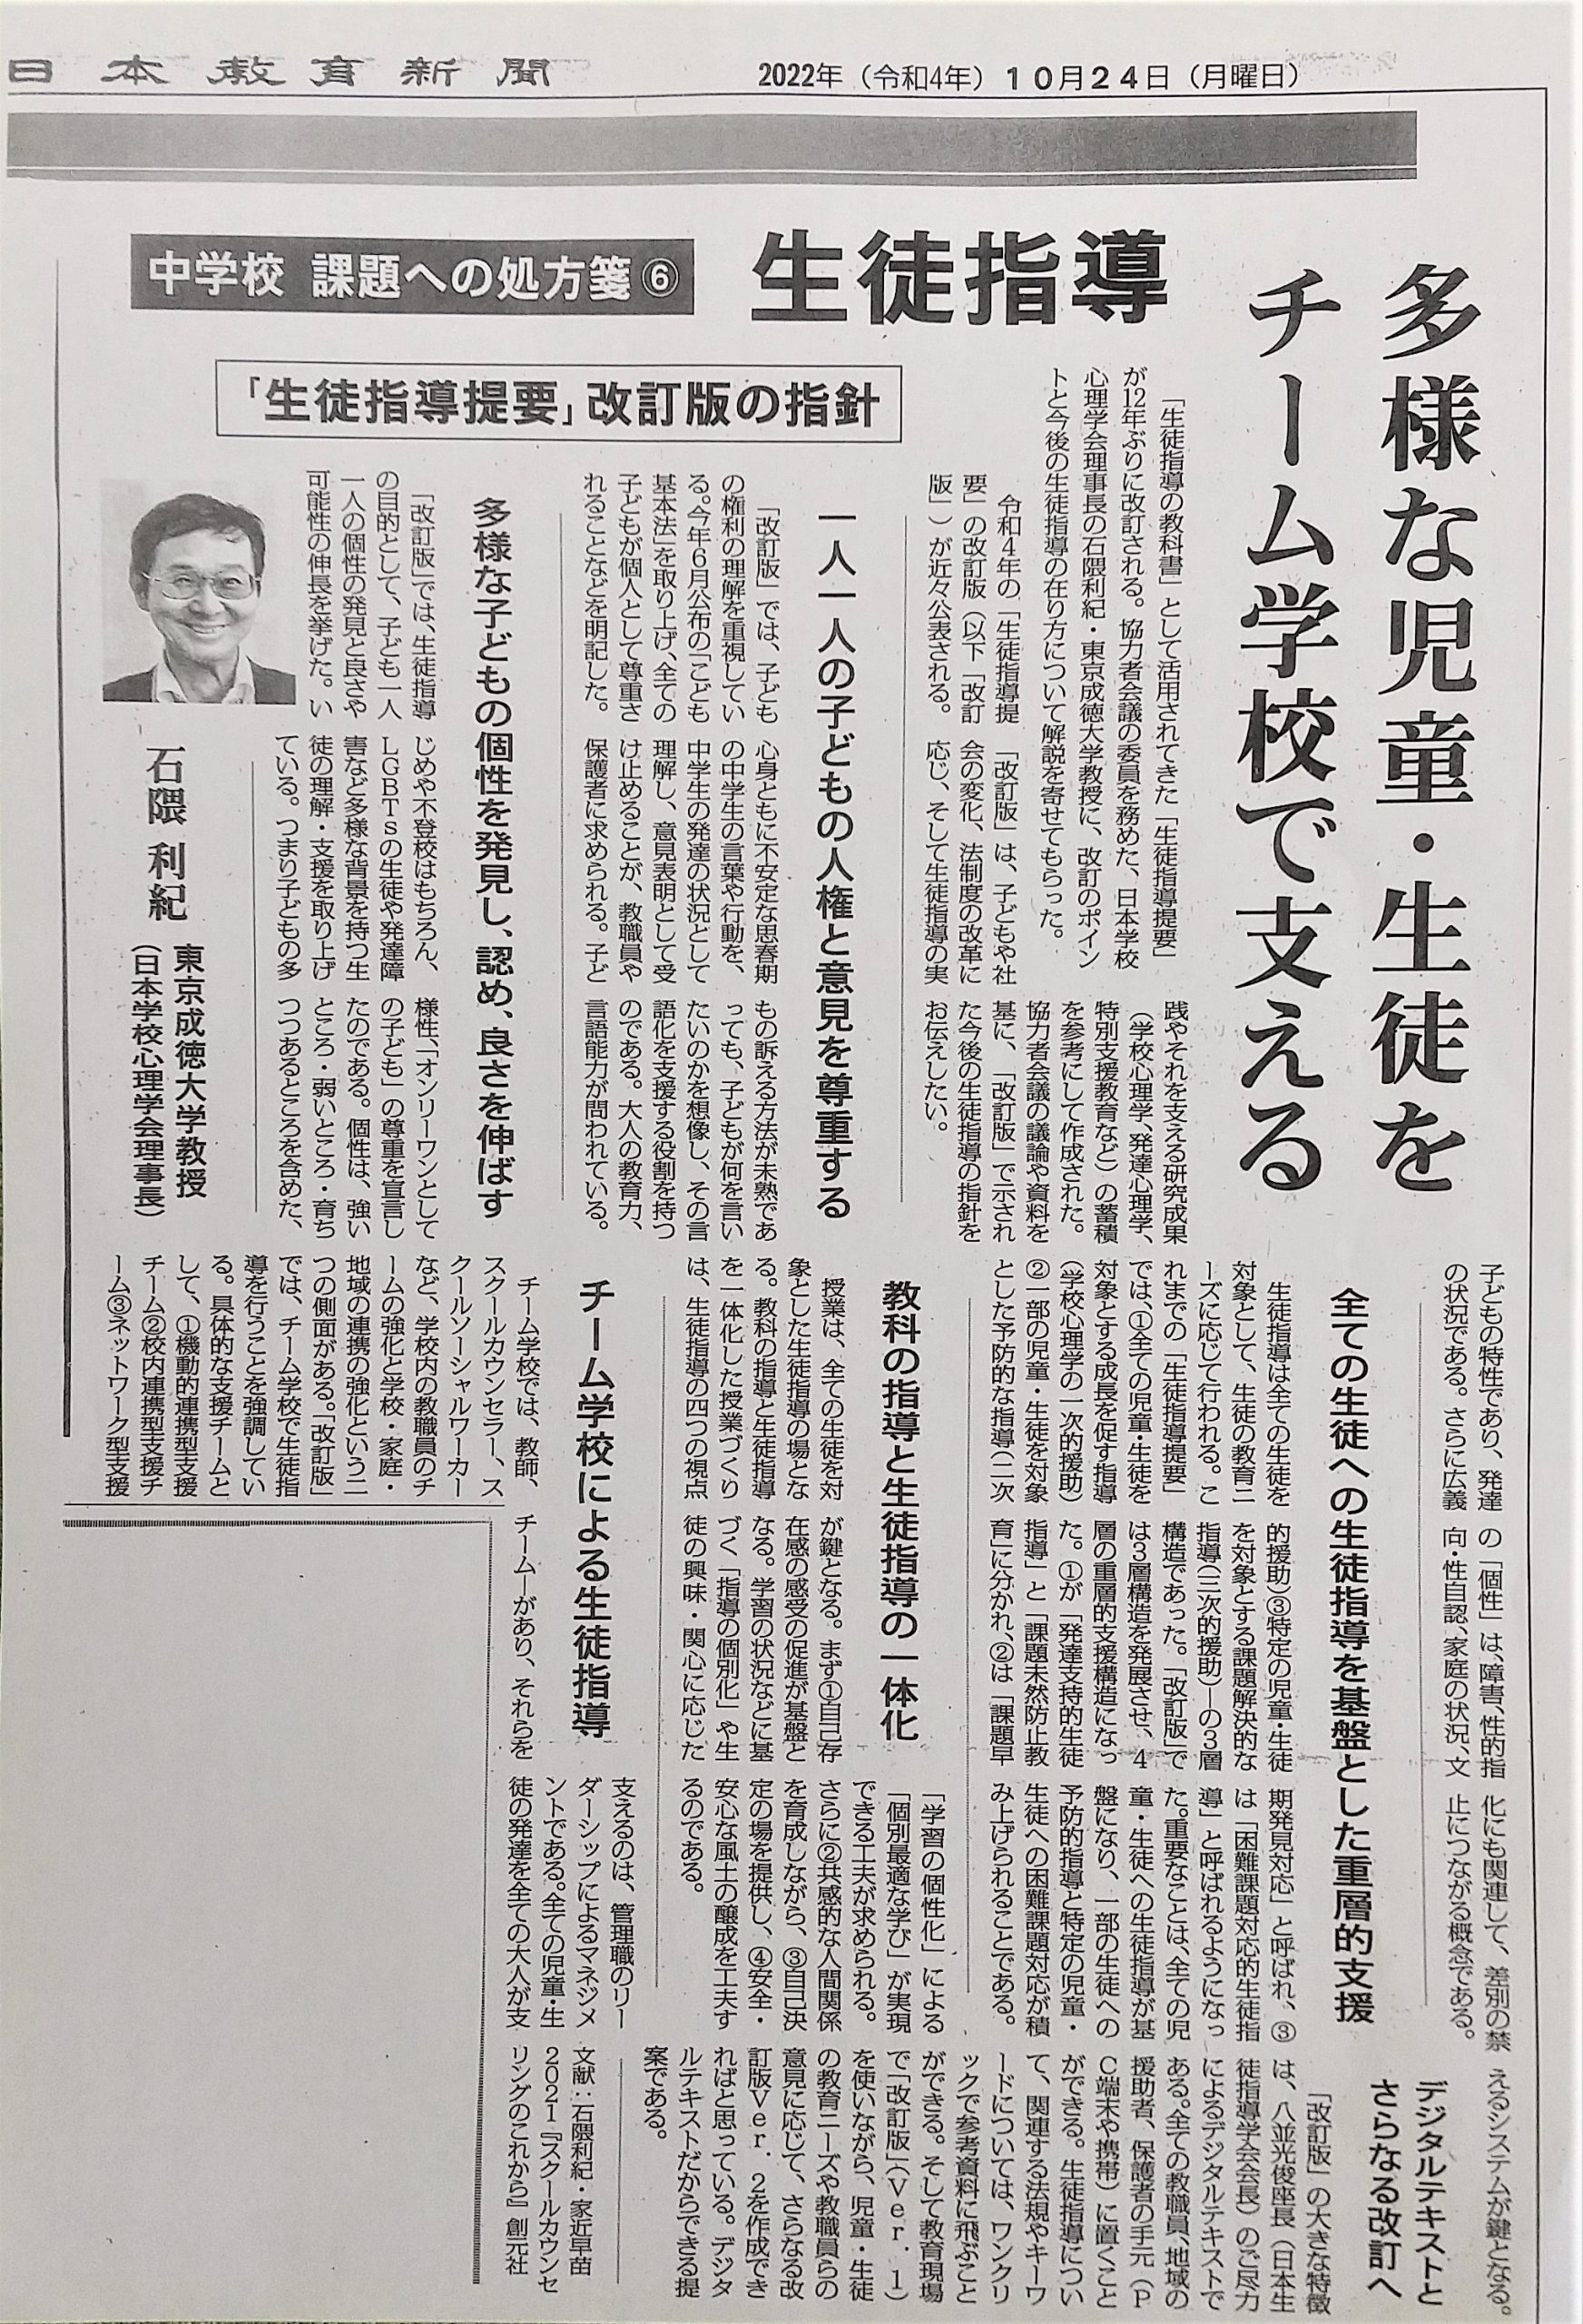 日本教育新聞「生徒指導提要」